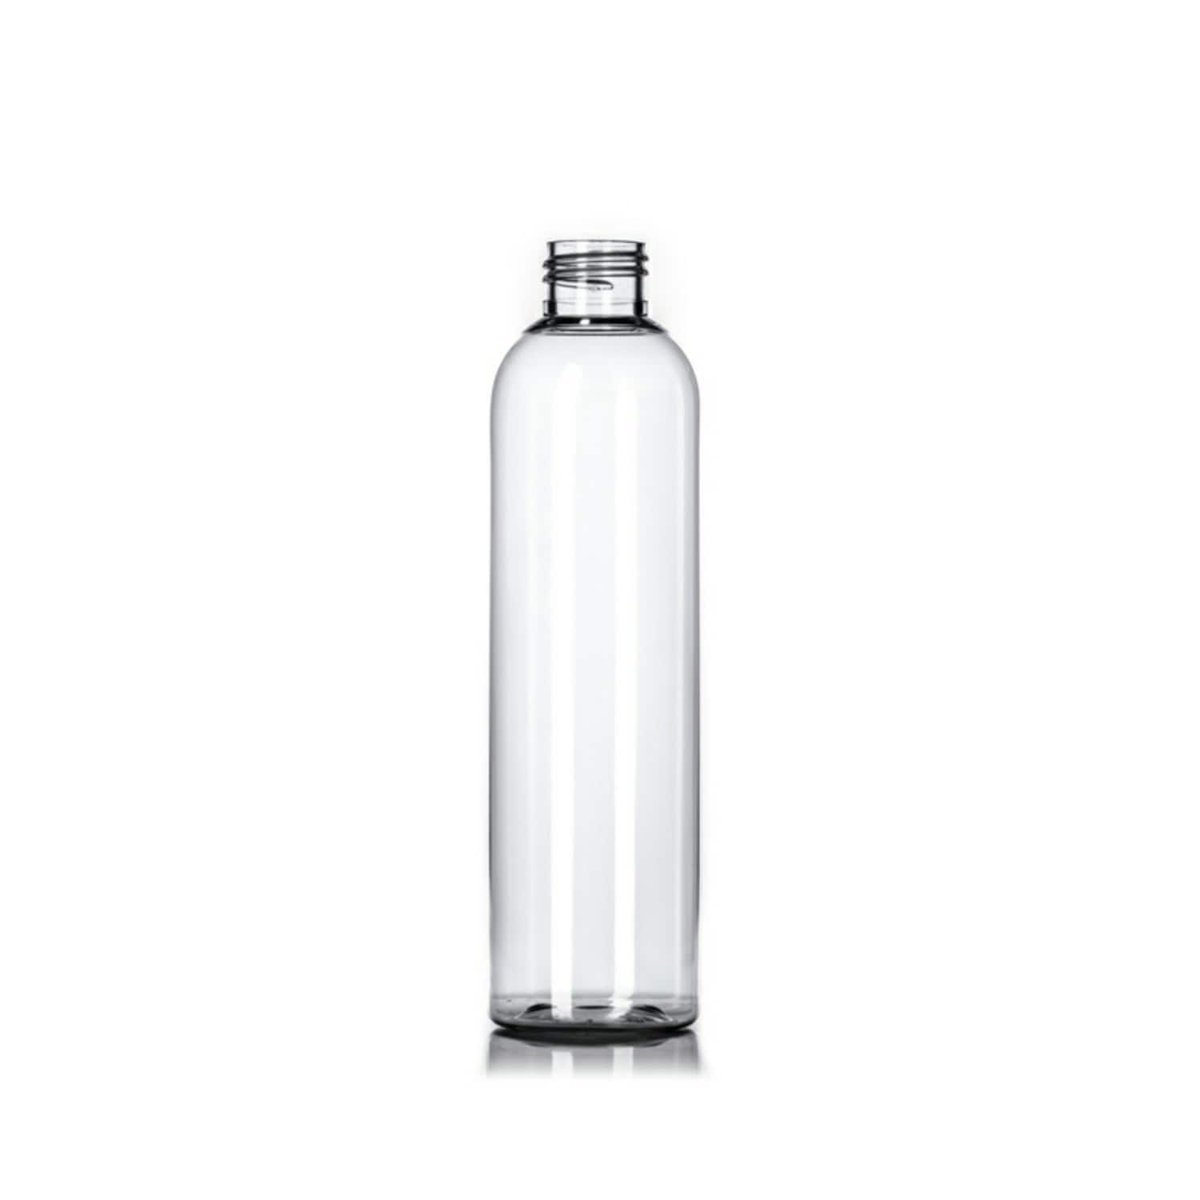 8oz Clear Cosmo PET Plastic Bottles - Set of 25 - BULK25 tuppu.net/496c8c8a #explorepage #skincare #etsyseller #trending #blackownedbusiness #cosmetics #beautysupply #bottles #handmade #16ozPlasticBottle